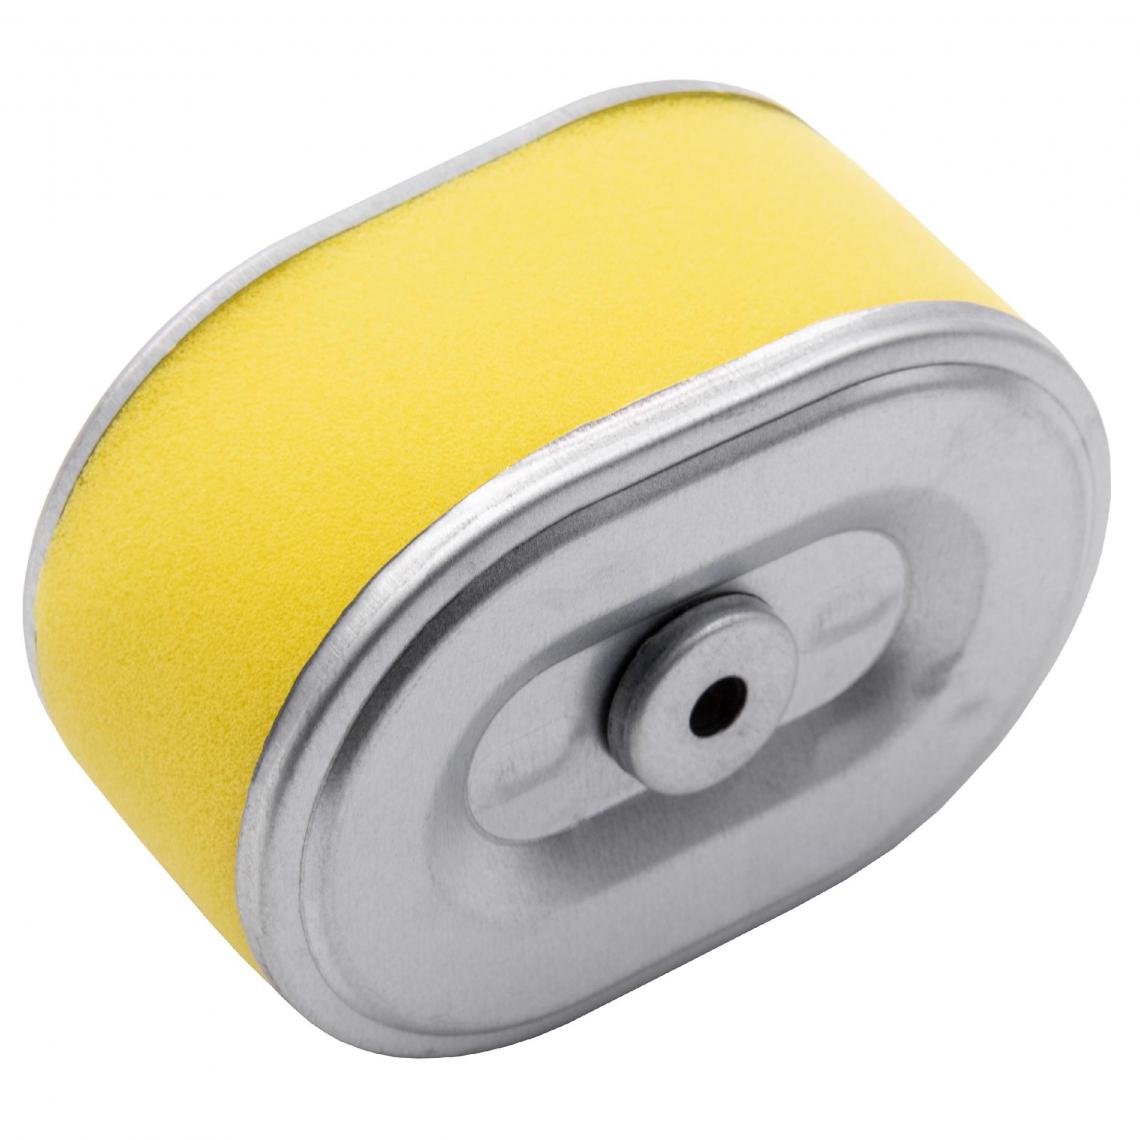 Vhbw - vhbw Filtre à air avec préfiltre de rechange jaune, argent remplace Napa 7-07183 compatible avec tondeuse à gazon; 10,1 x 7,2 x 5,1cm - Accessoires tondeuses